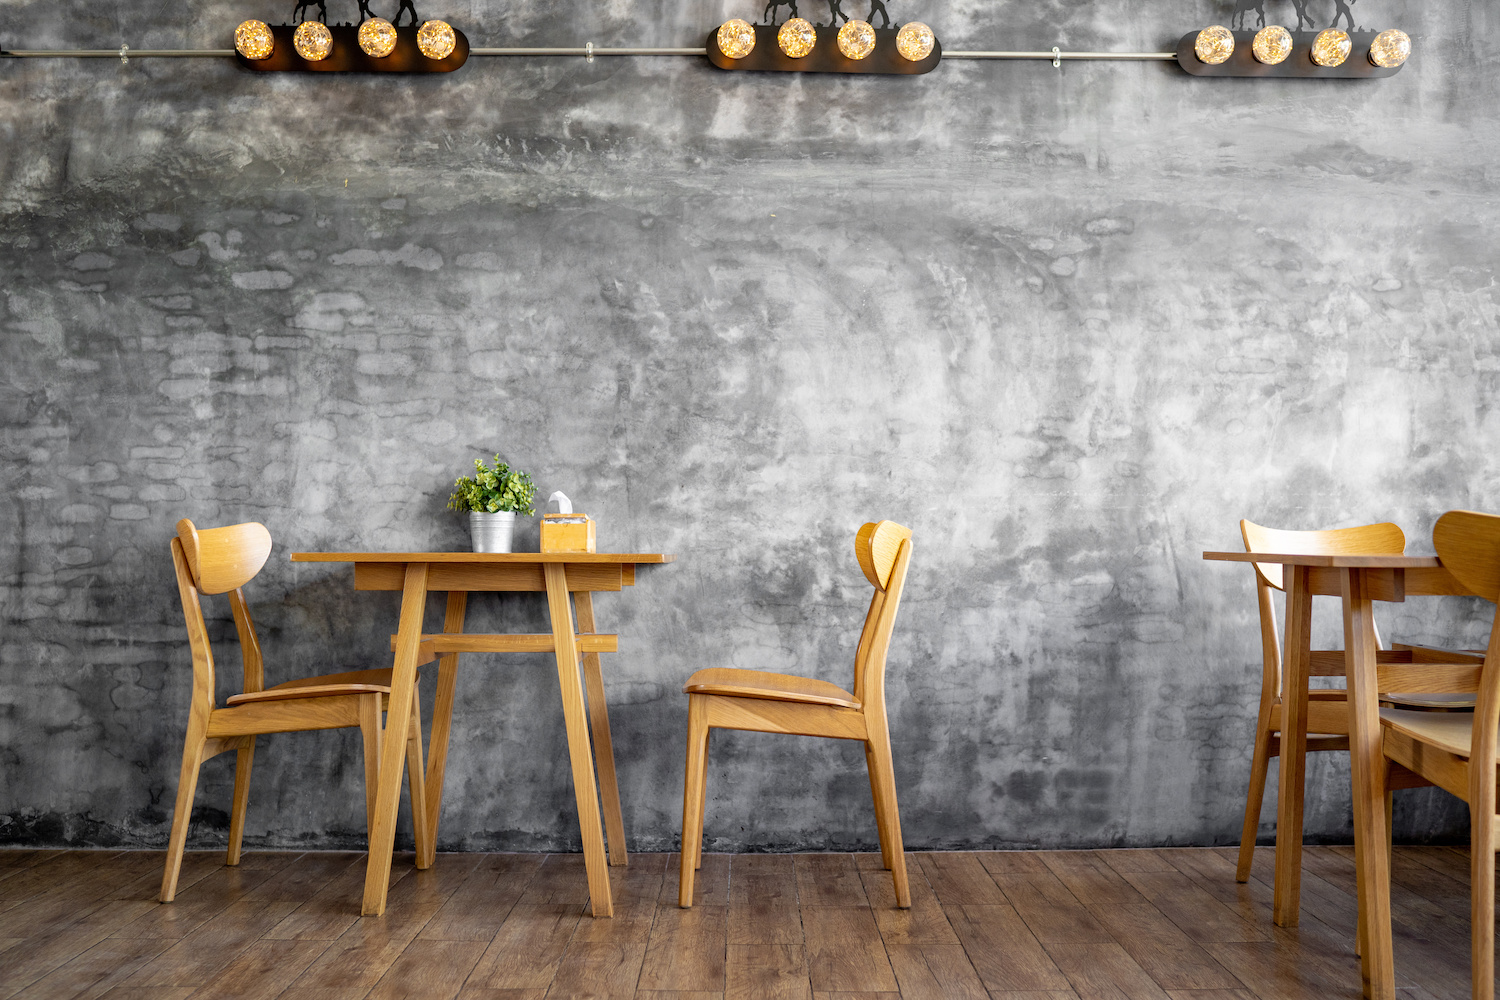 Slip-resistant flooring for restaurants